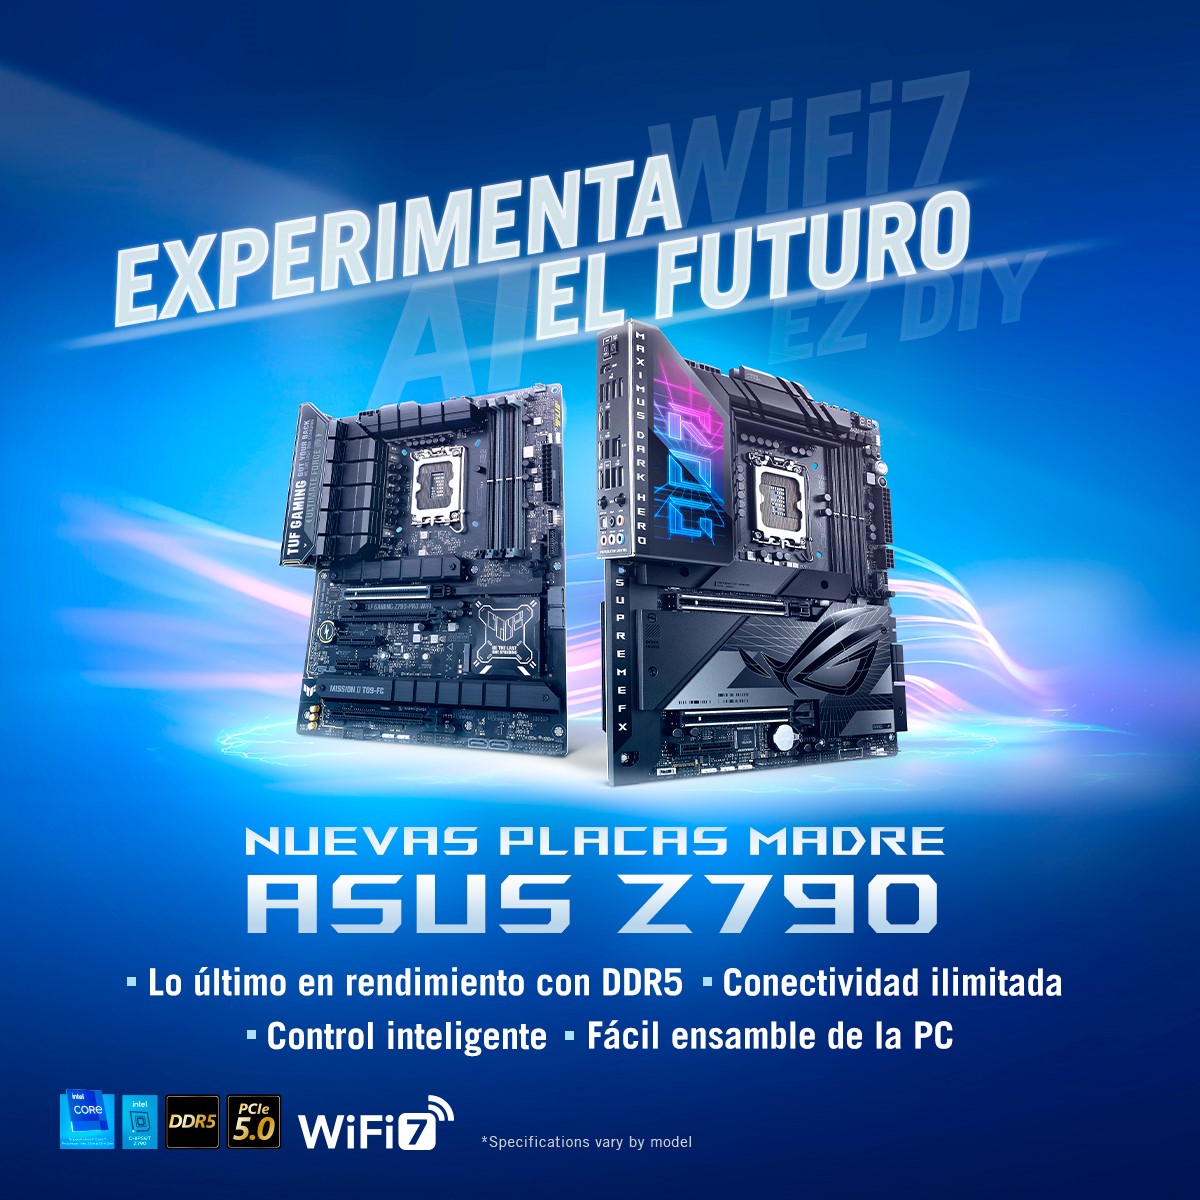 ASUS Republic of Gamers anuncia nuevas placas Intel Z790